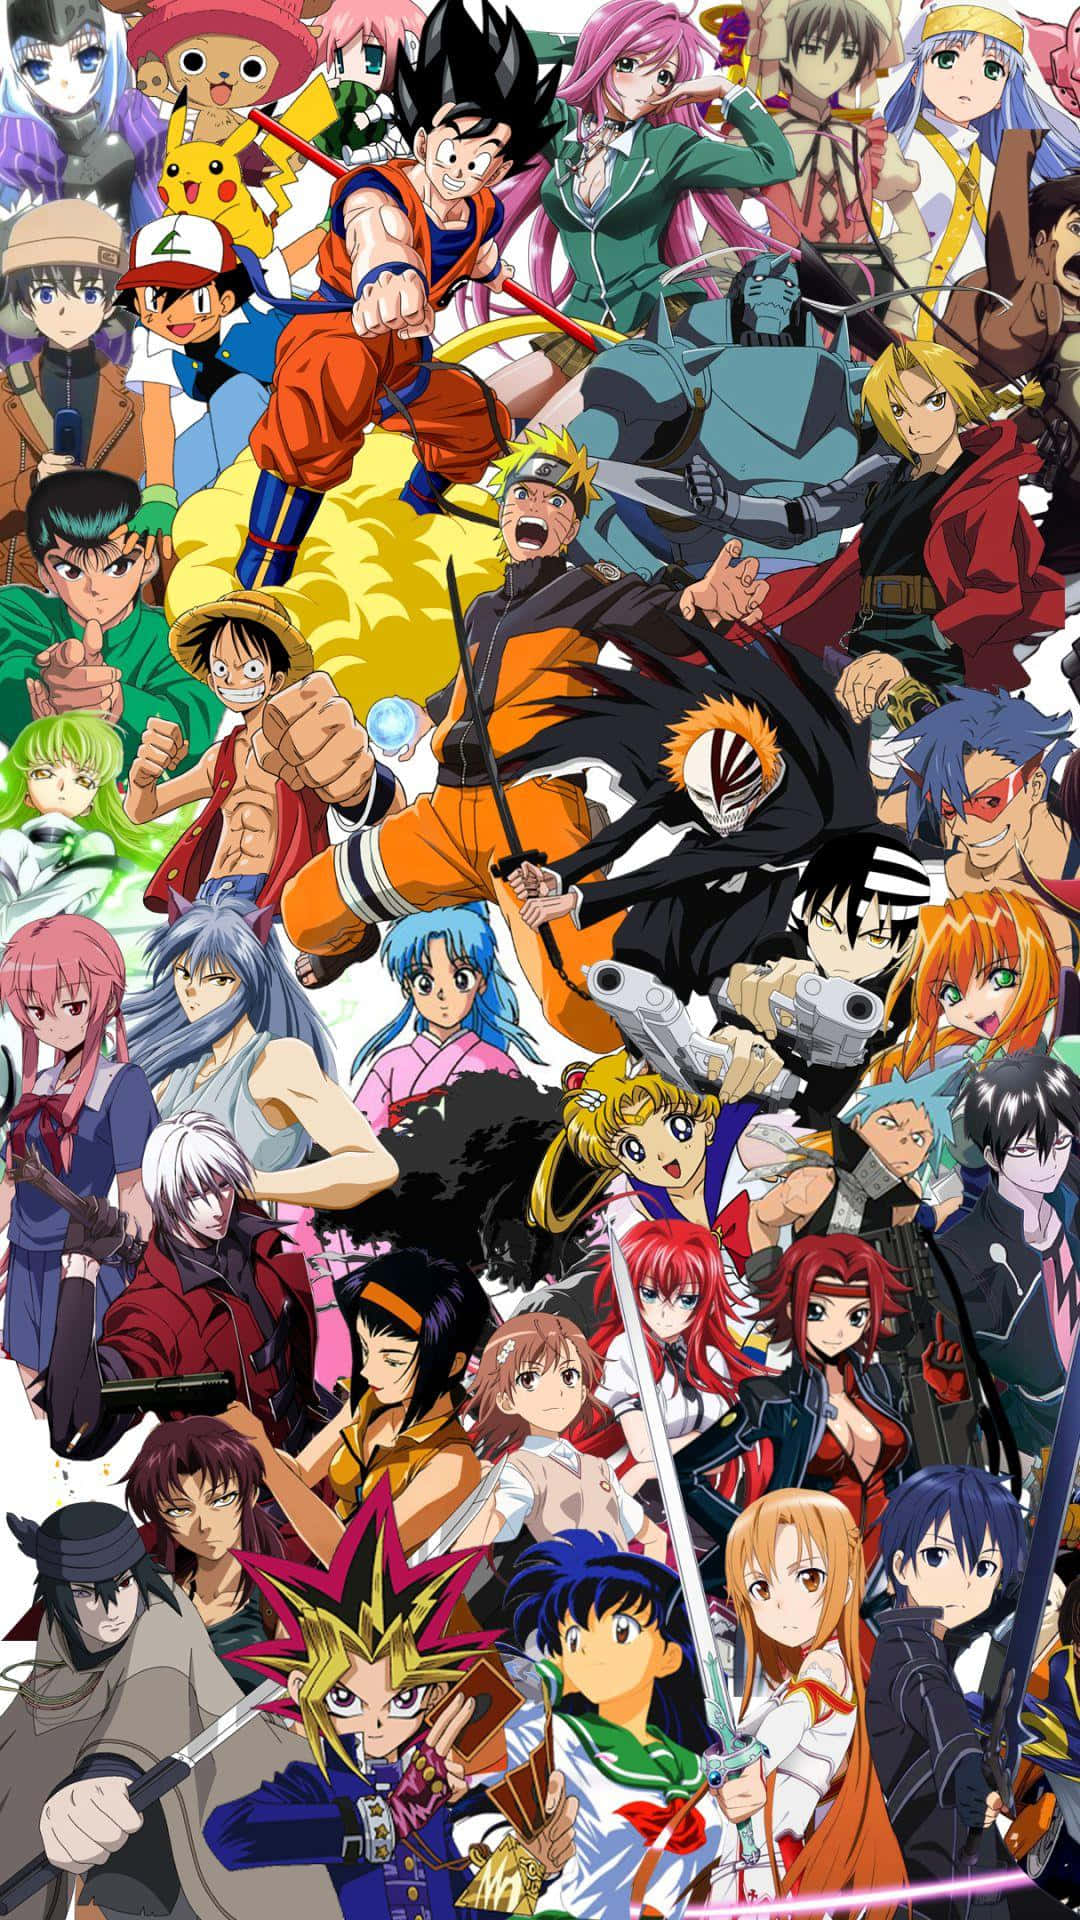 Animesverden Er Fuld Af Forskelligartede Og Fascinerende Karakterer.